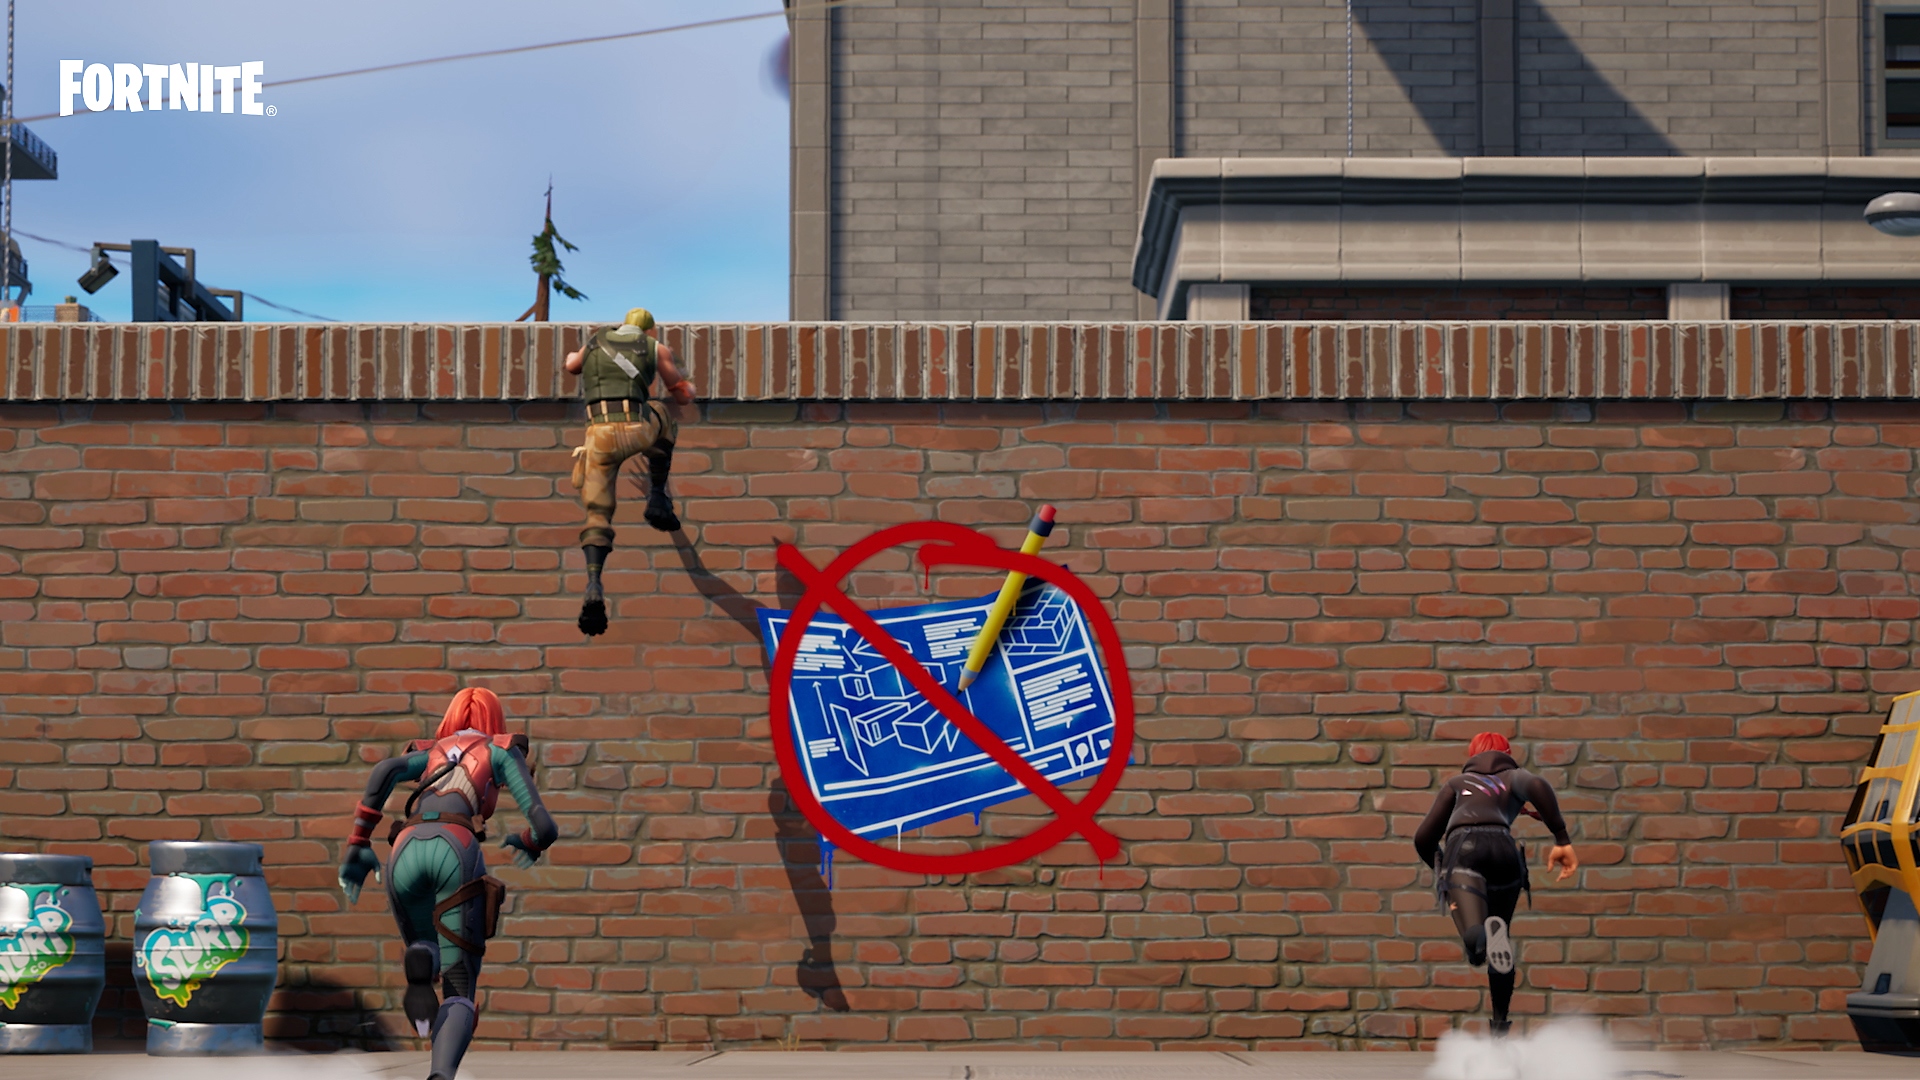 Mode Zéro construction de Fortnite - Personnages escaladant un mur